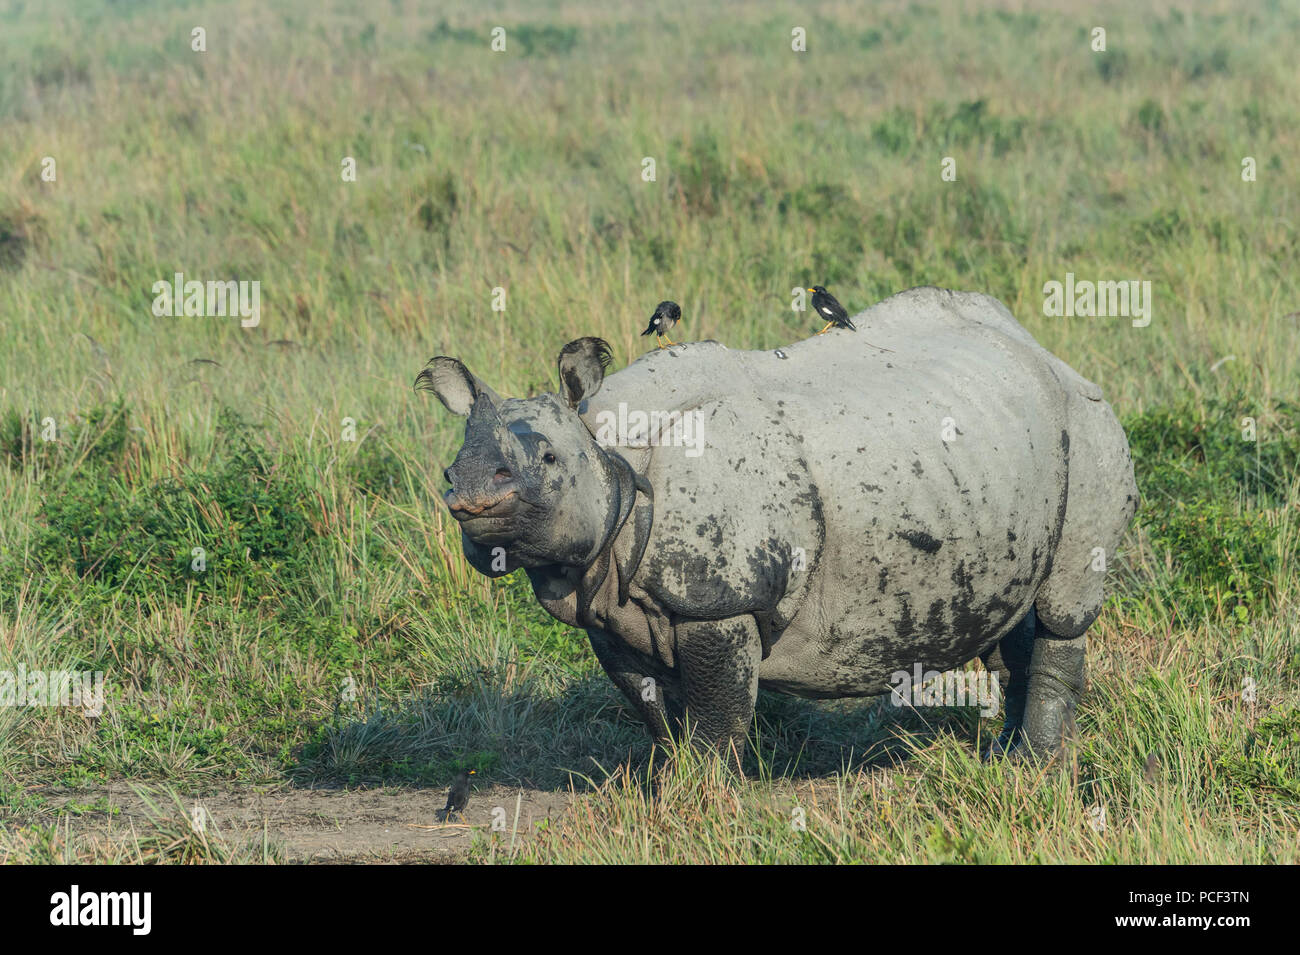 Le rhinocéros indien (Rhinoceros unicornis) avec Myna oiseaux, le parc national de Kaziranga, Assam, Inde Banque D'Images